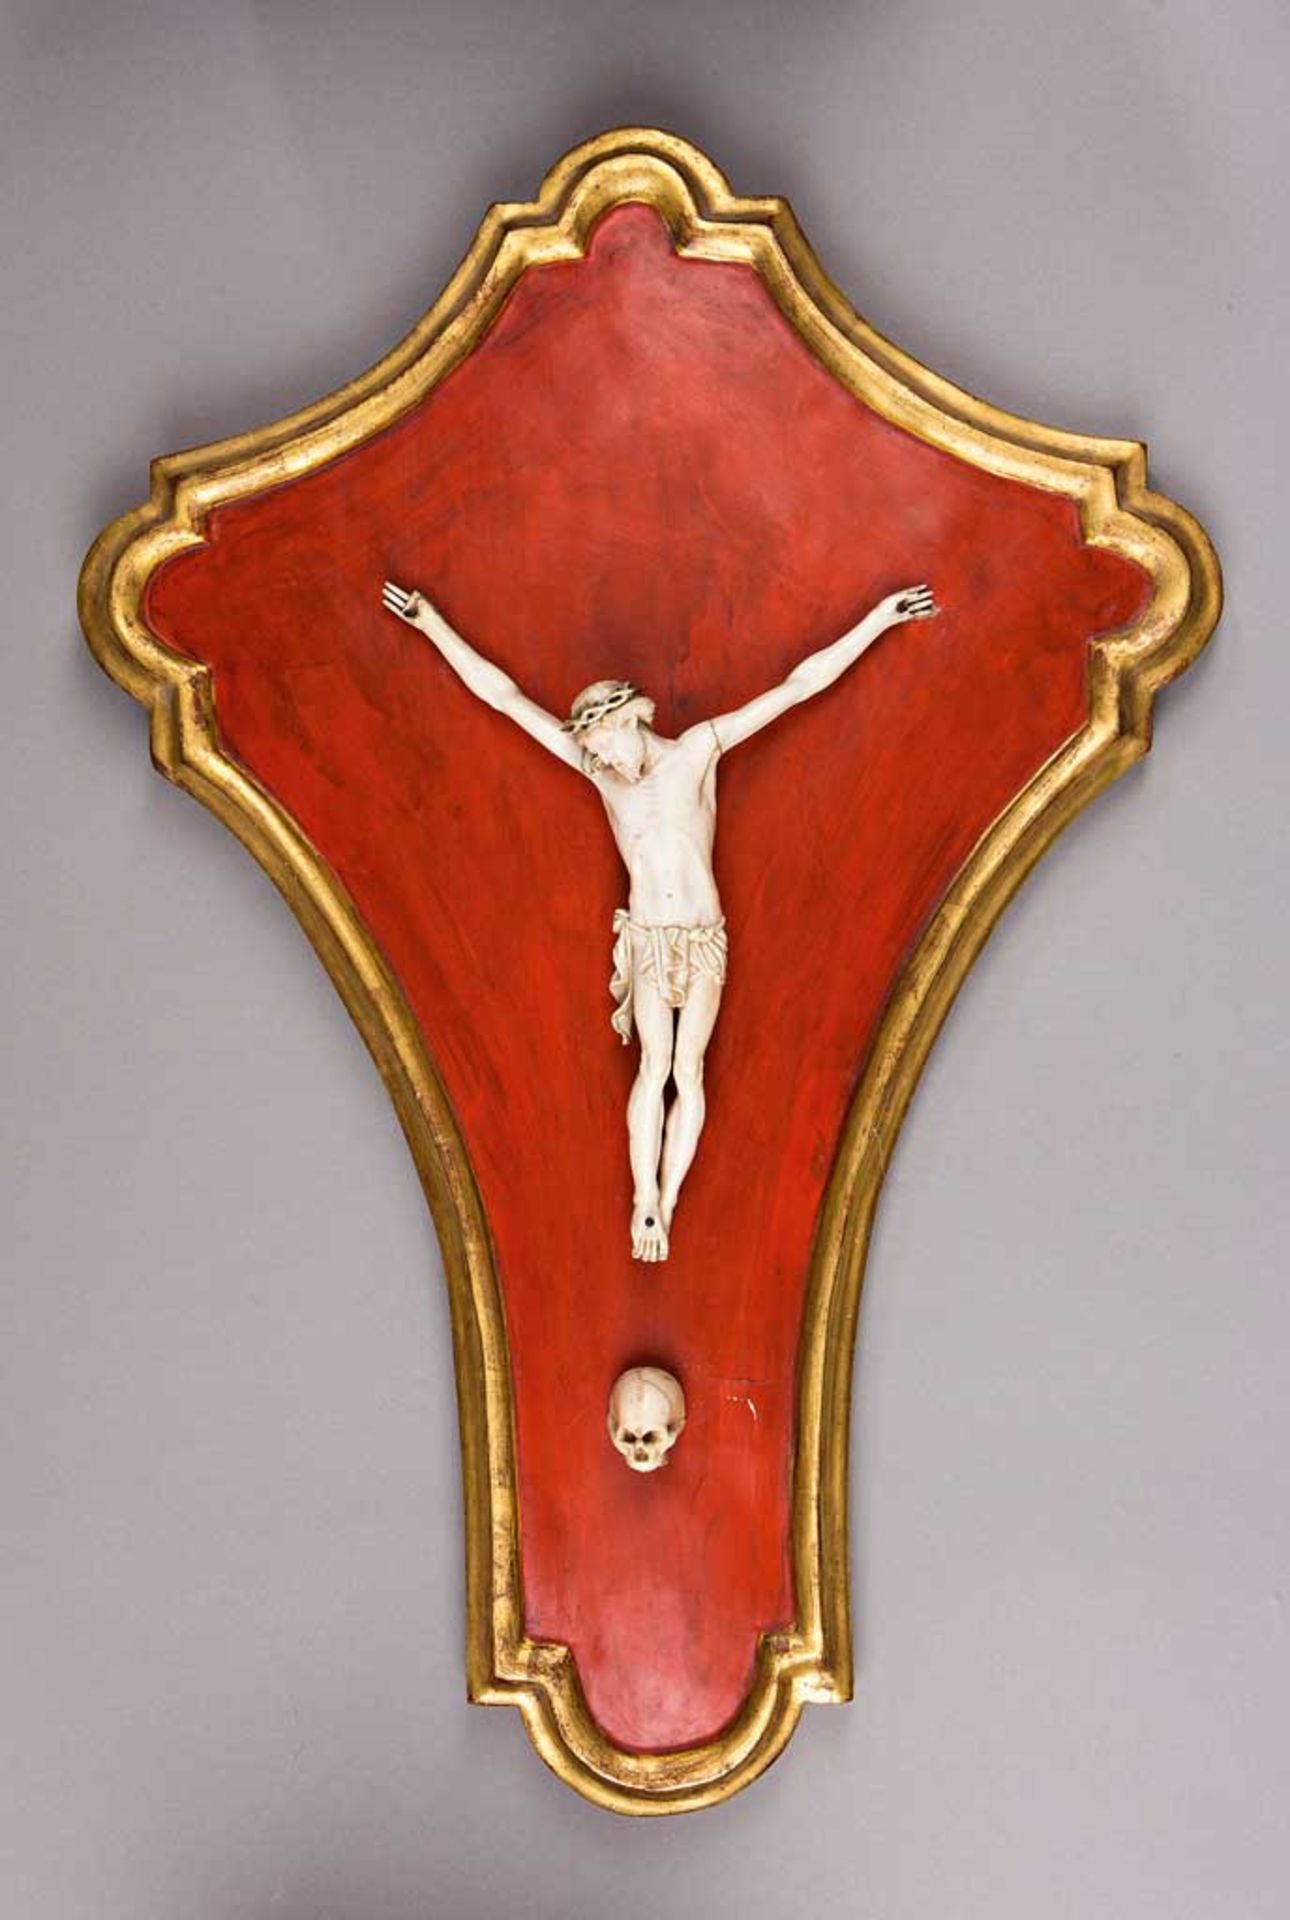 Elfenbein-Kruzifixus. Dreinageltypus. Zwei Finger der rechten Hand fehlen. Italien, 18./19. Jh. H 22